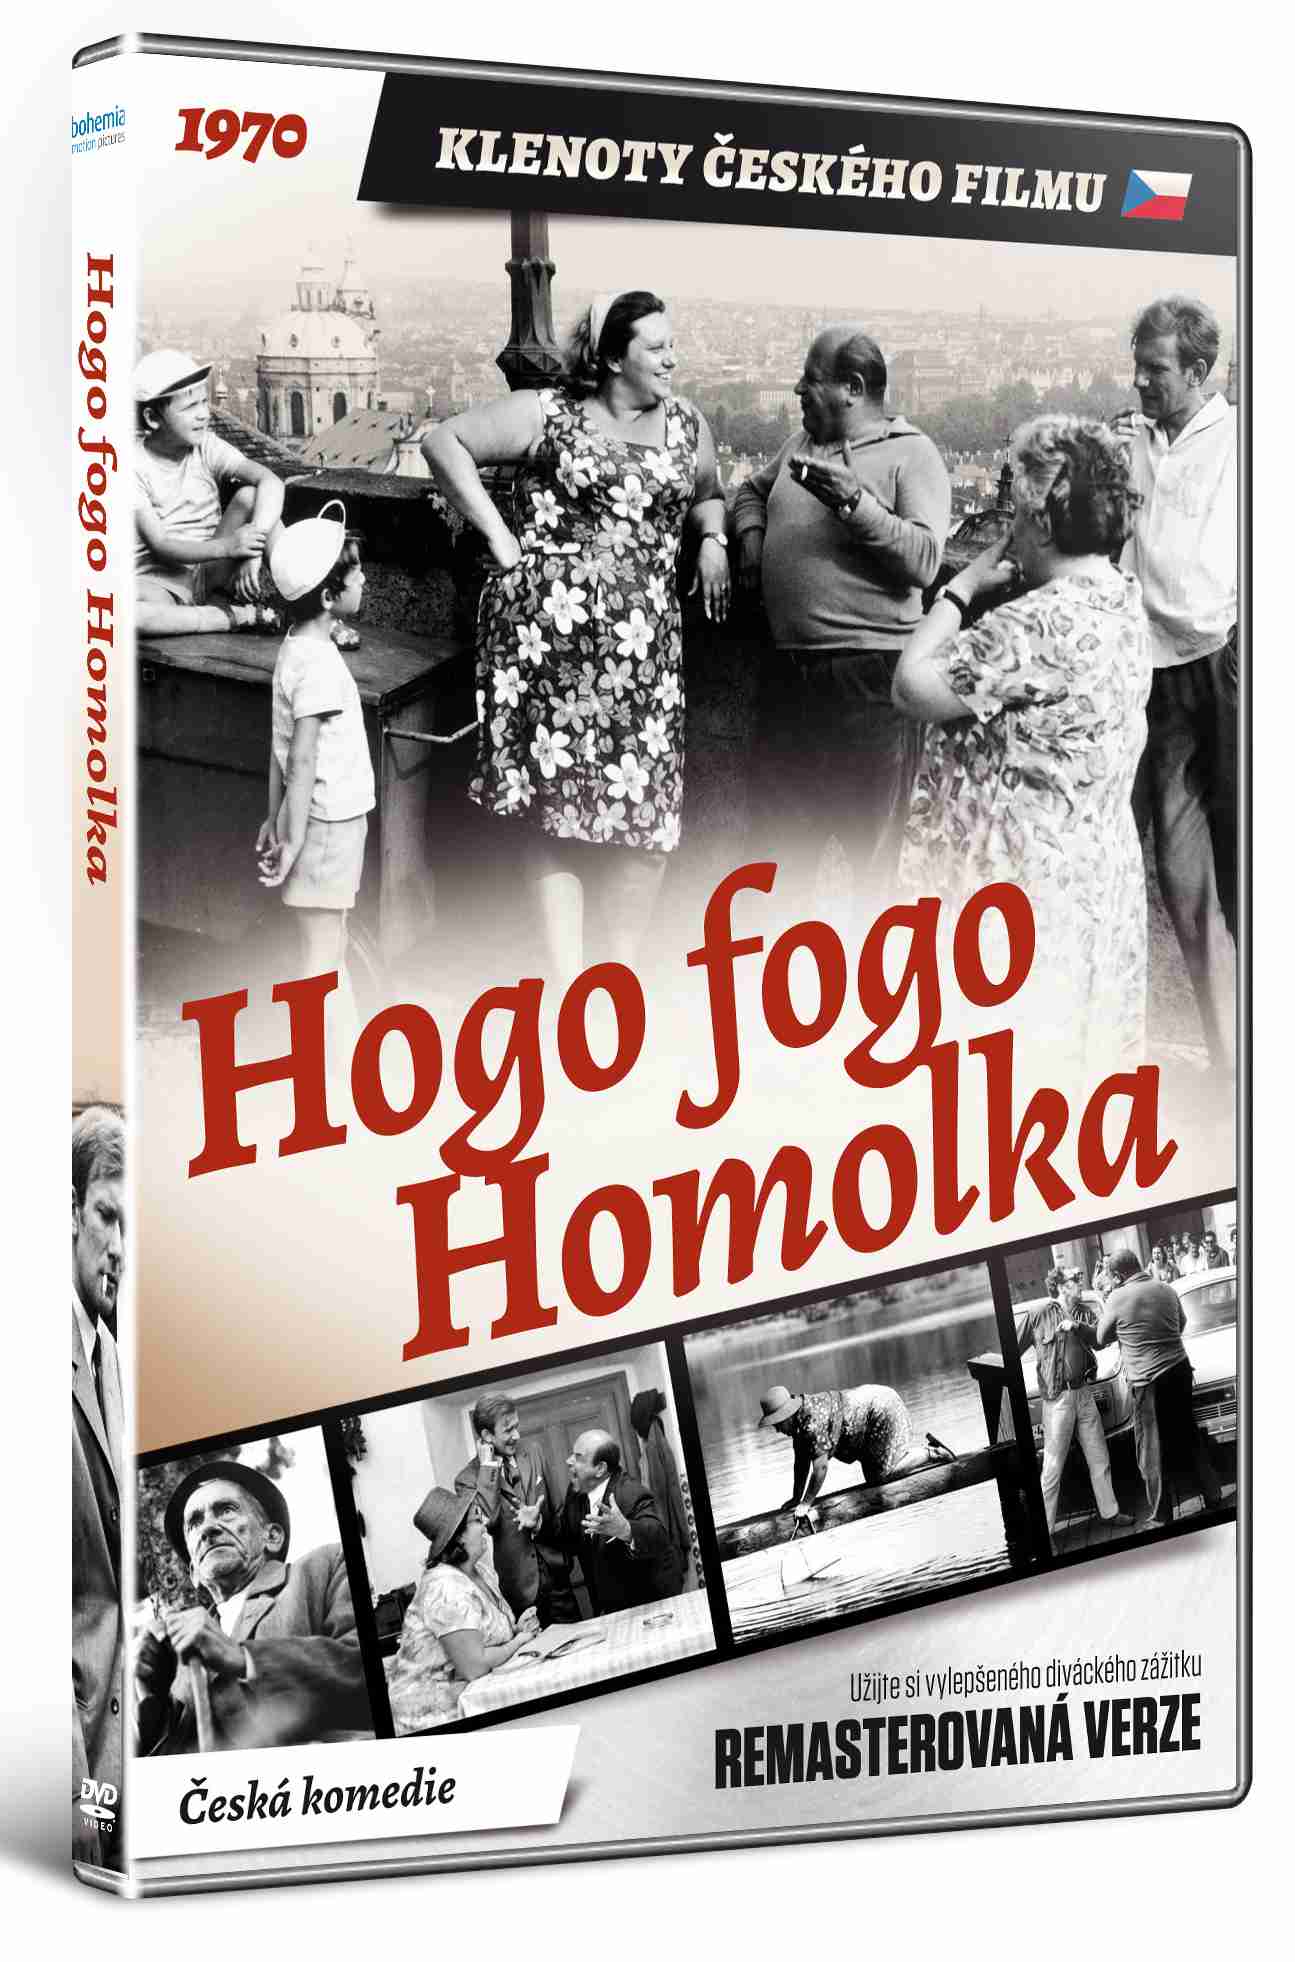 Hogo fogo Homolka (Remasterovaná verze) - DVD